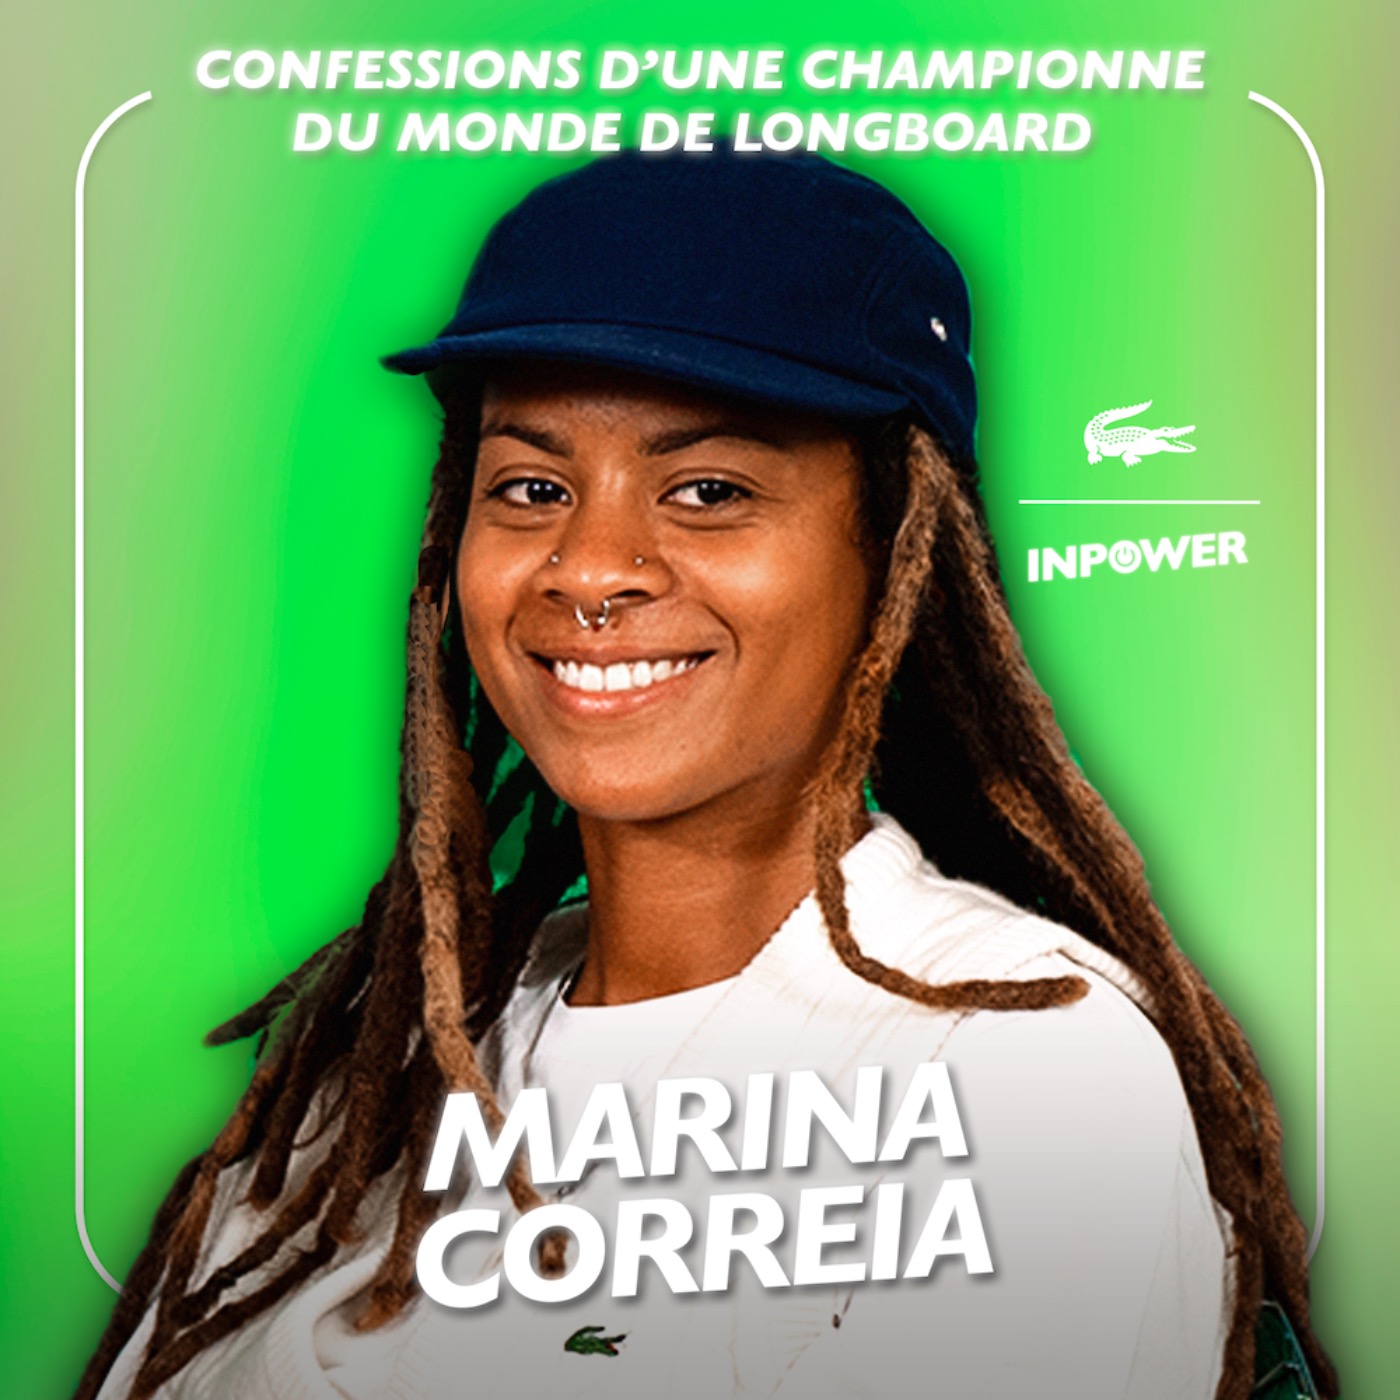 Confessions d’une histoire hors du commun: Marina Correia, championne du monde de longboard